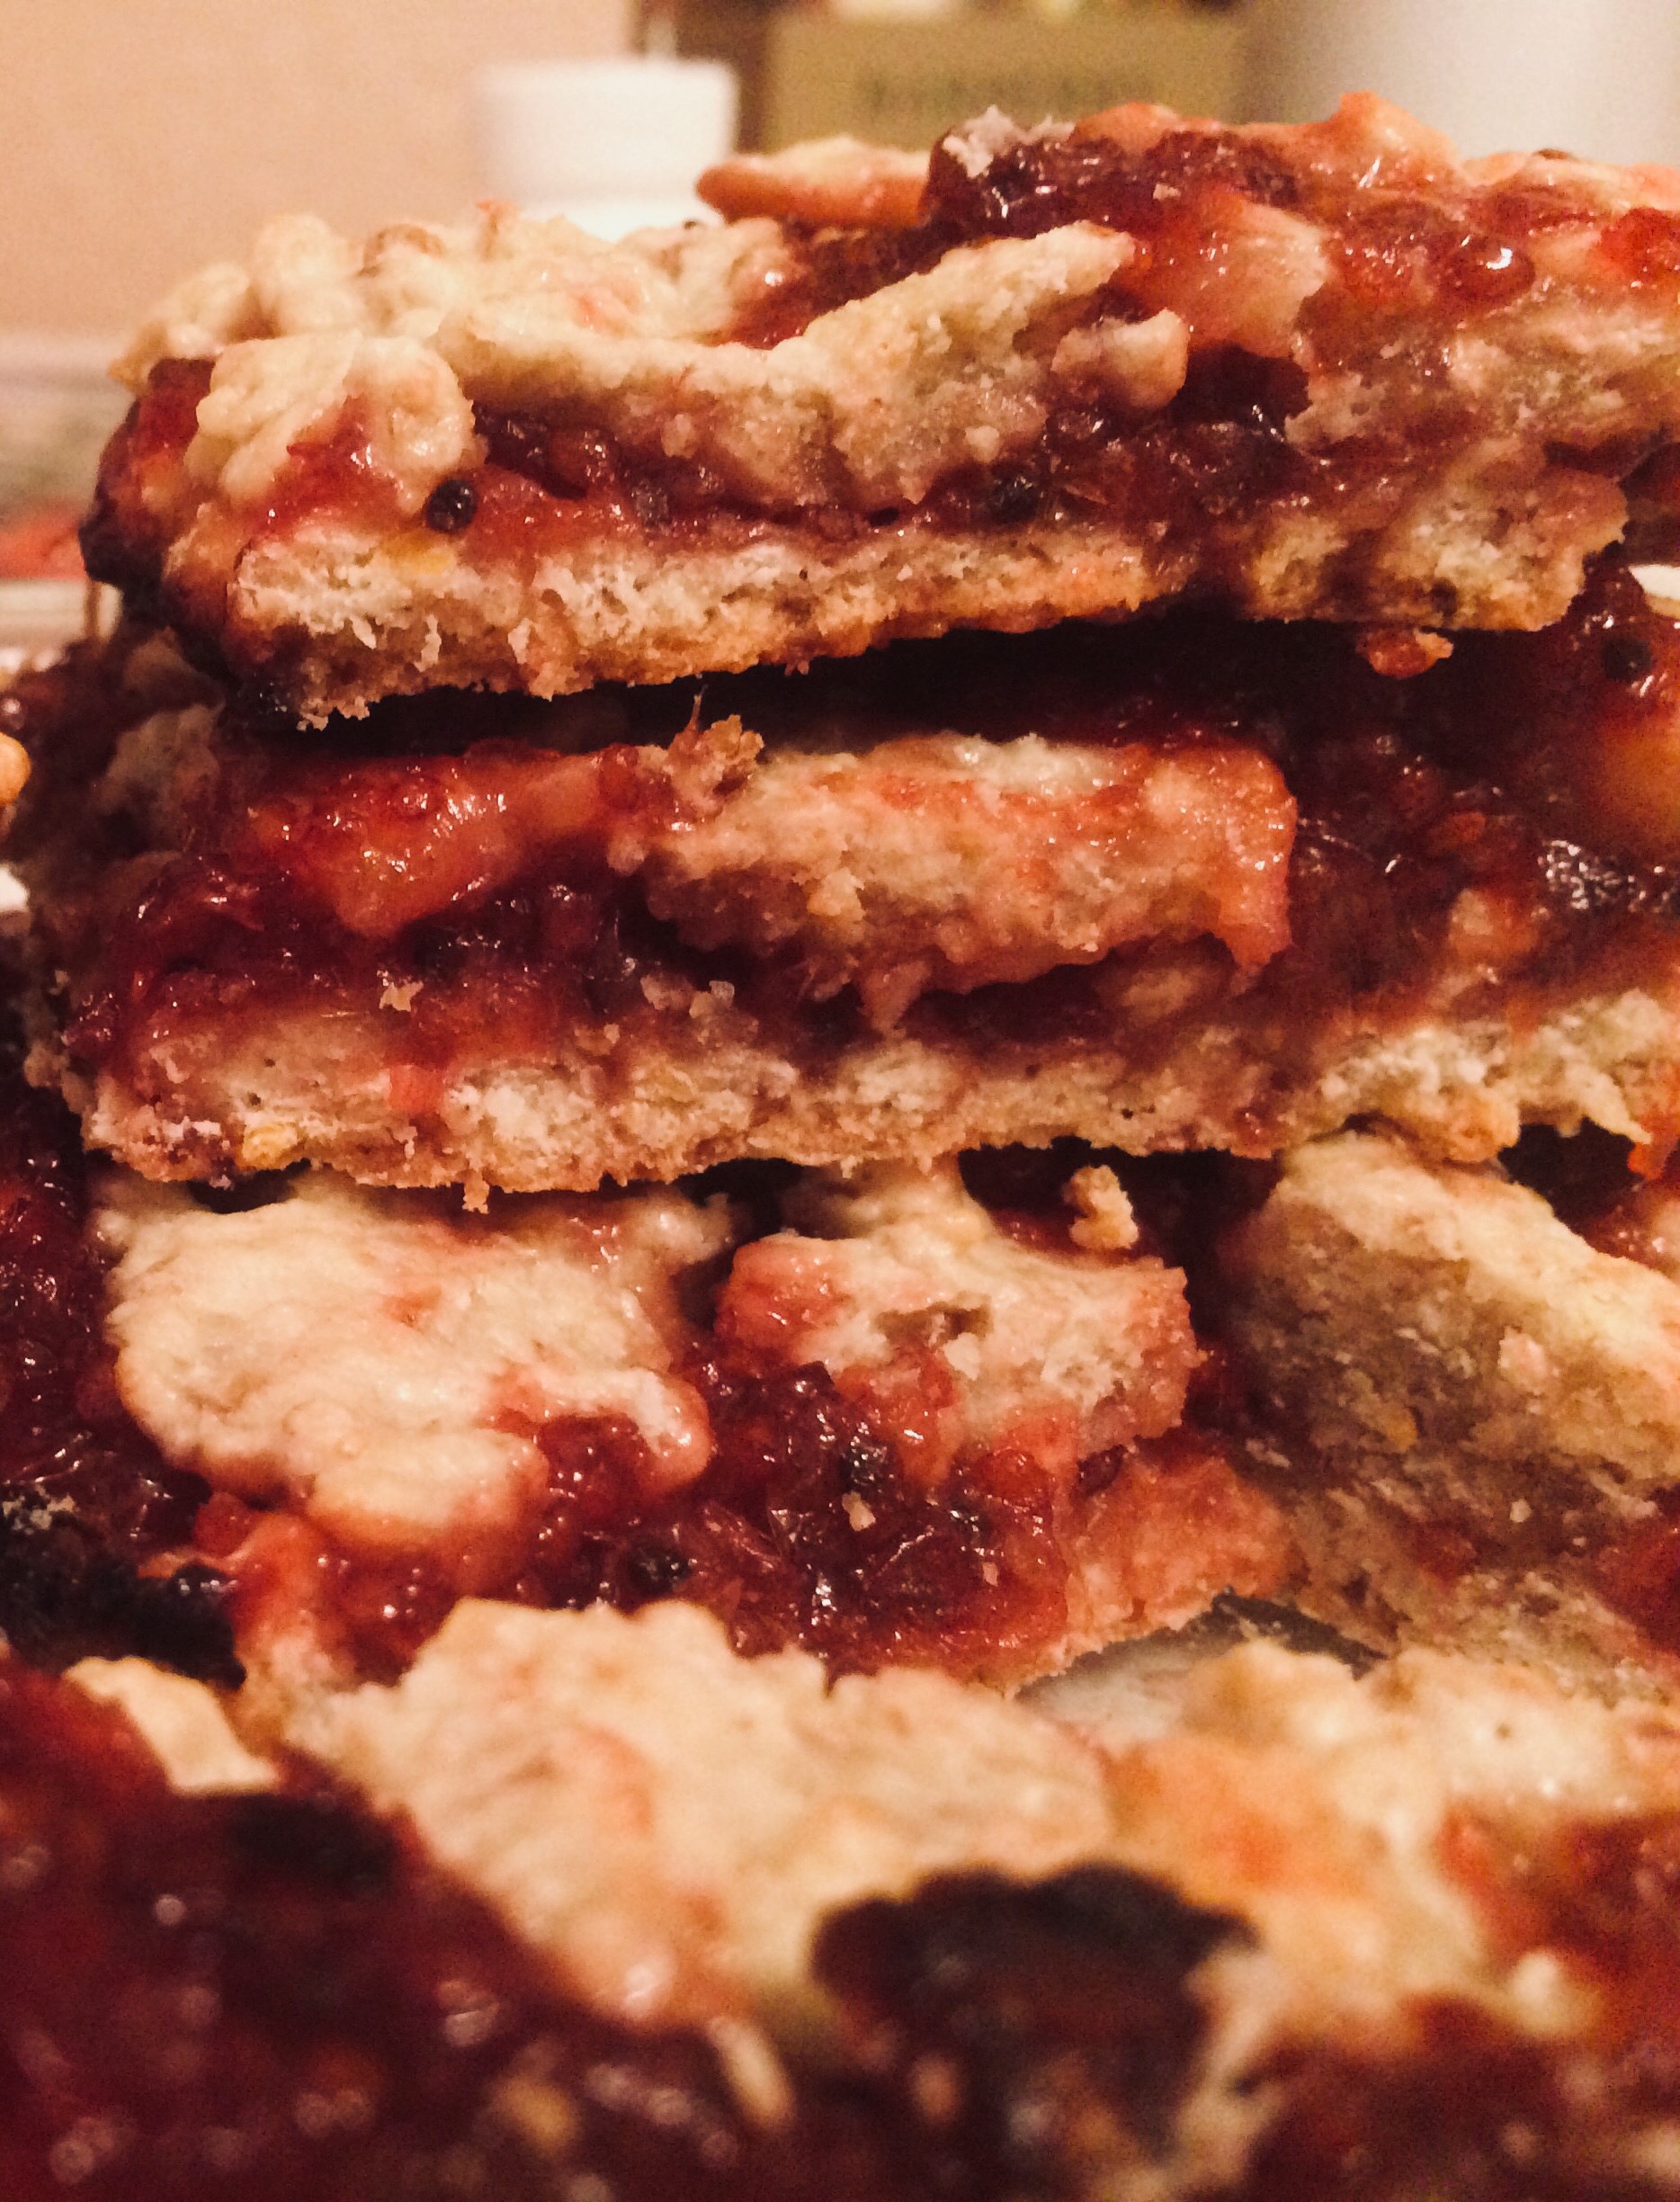 Клюквенное печенье (Cranberry crumble bars)